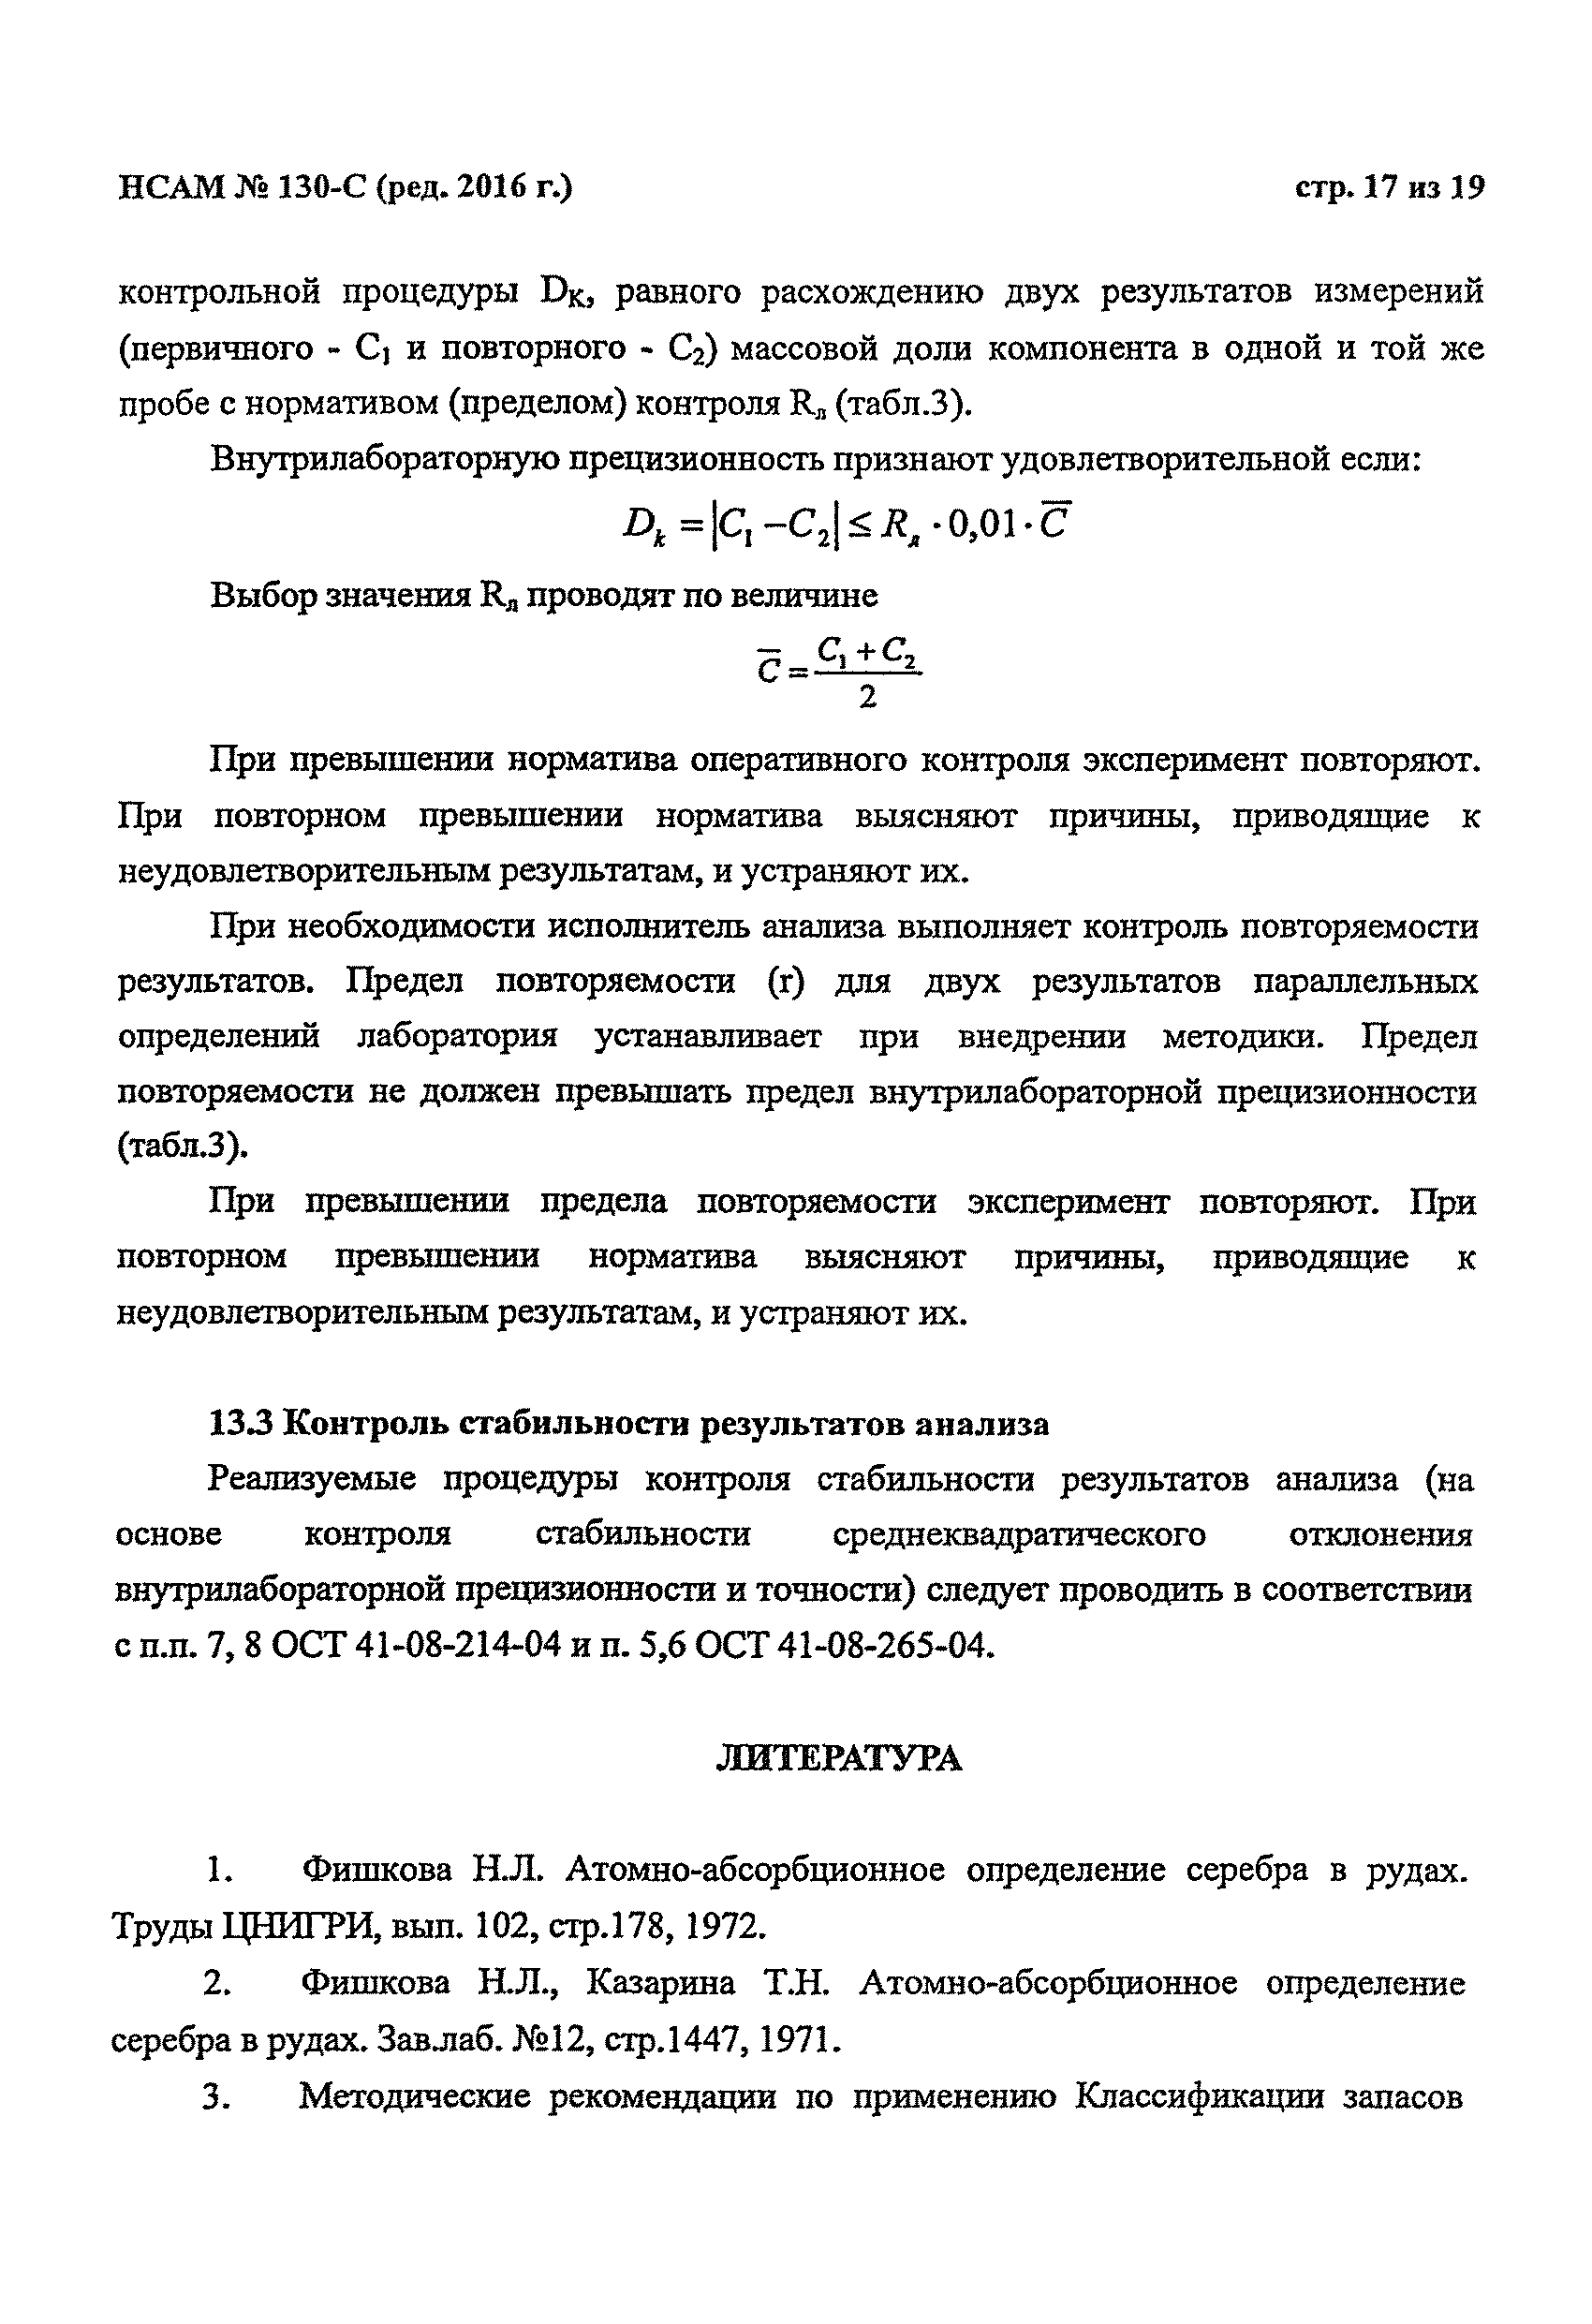 Инструкция НСАМ 130-С